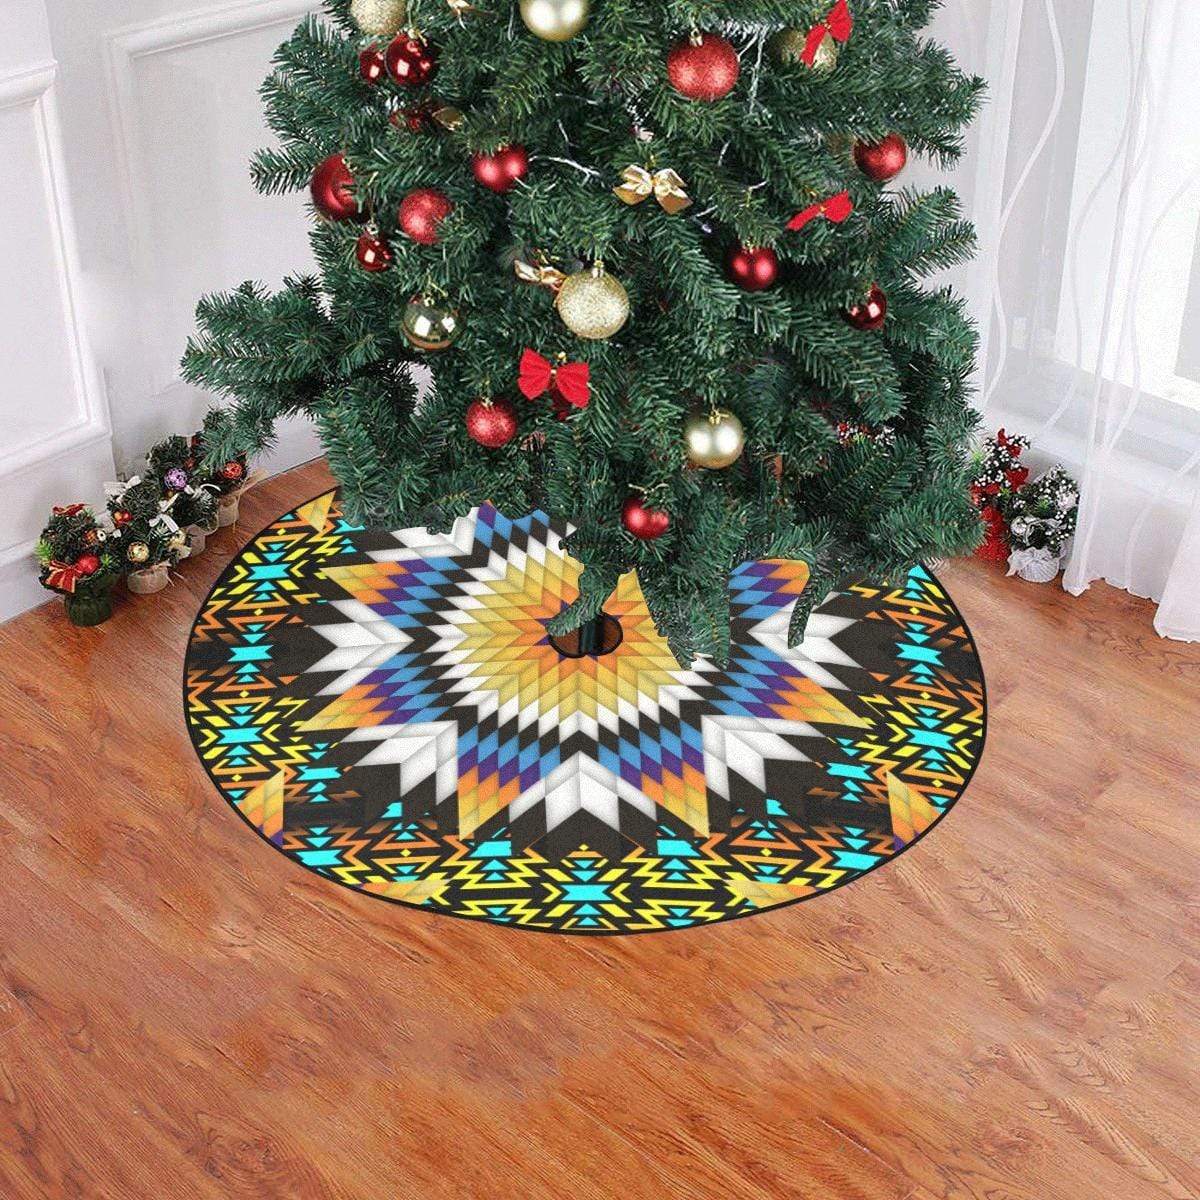 Black Fire Star Christmas Tree Skirt 47" x 47" Christmas Tree Skirt e-joyer 